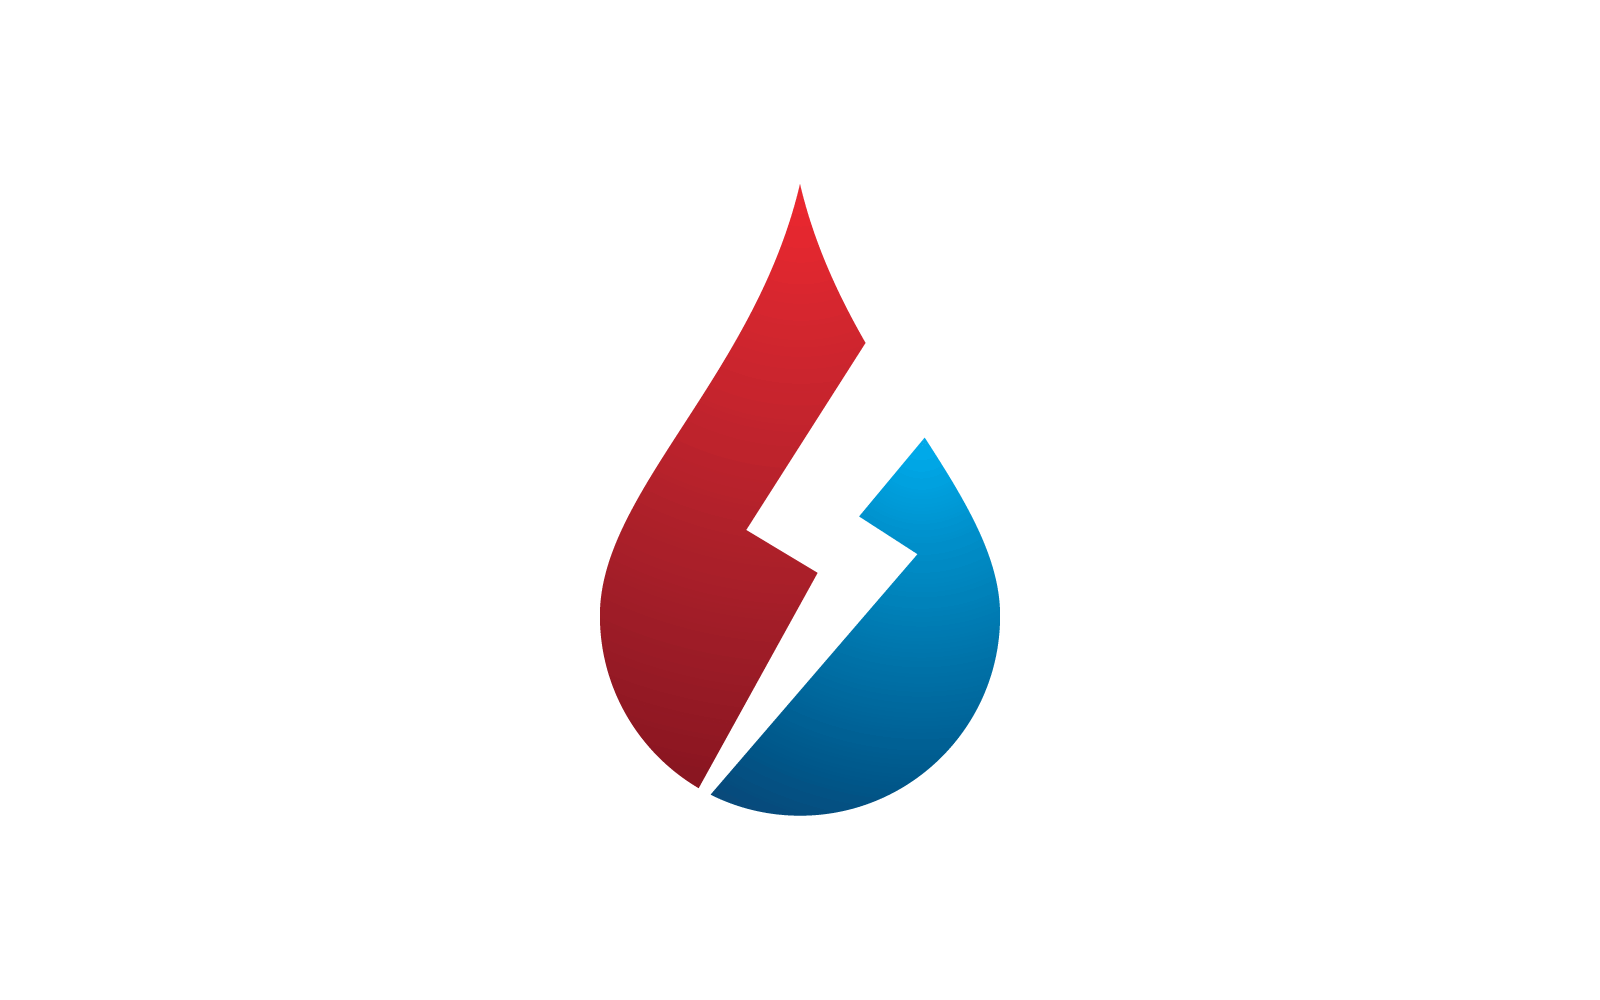 Fire flame Logo vector, Oil, gas and energy logo icon vector concept Logo Template